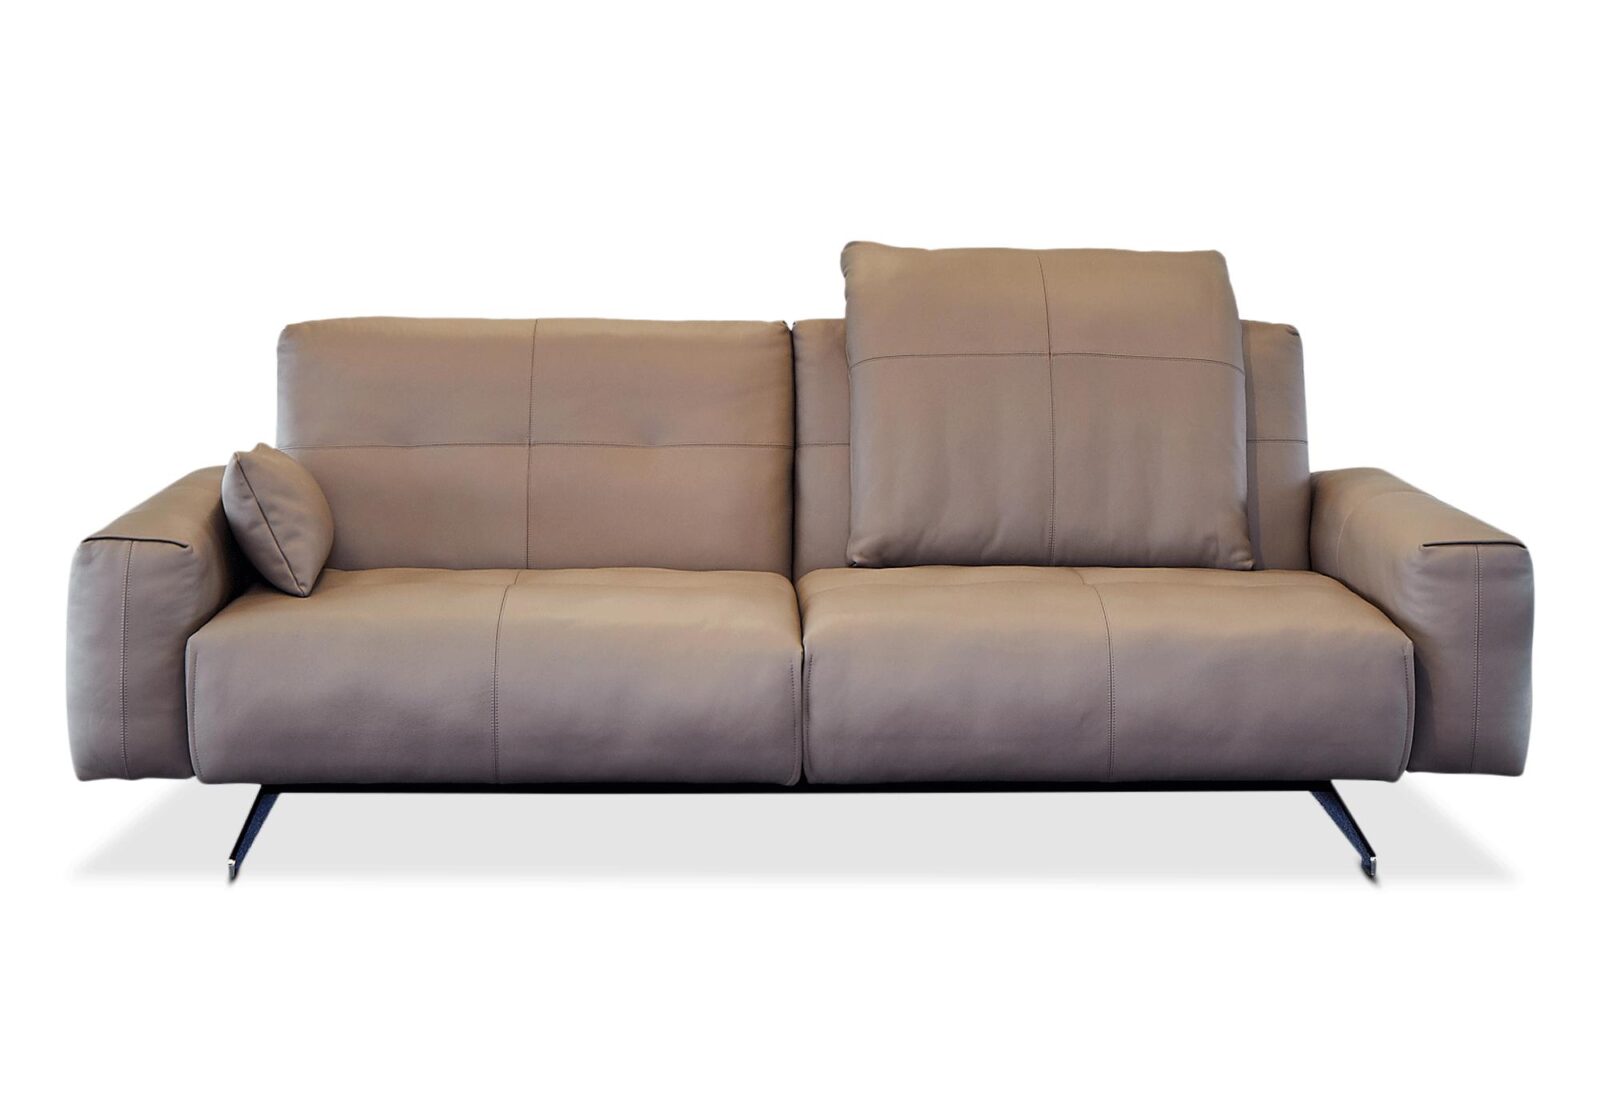 Sofa B50 Rolf Benz mit Rückenverstellung. Bezug: Leder. Farbe: Beigegrau. Erhältlich bei Möbel Gallati.